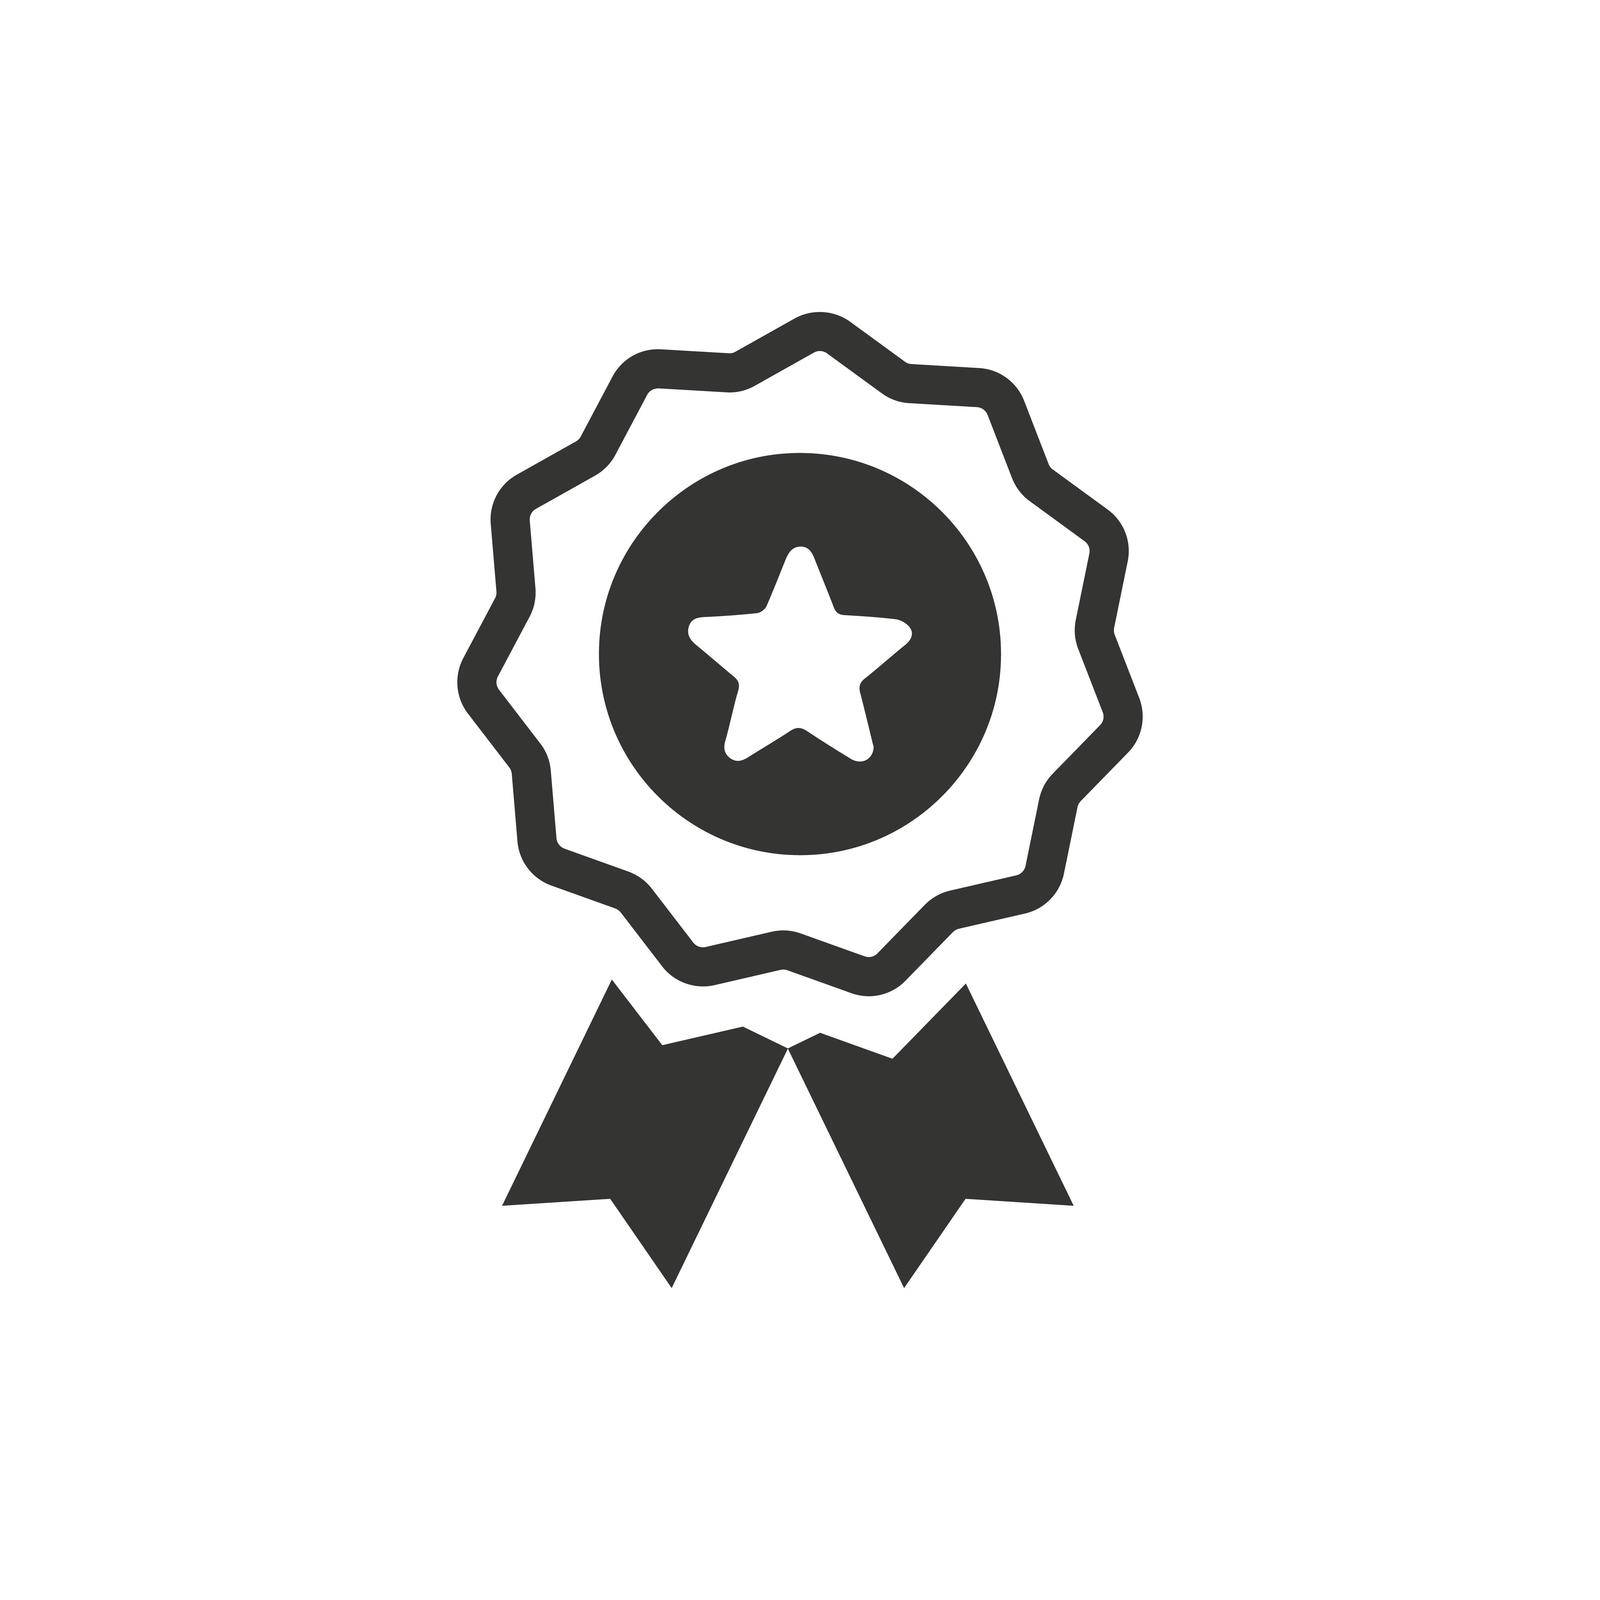 Award Ribbon icon. Vector EPS file.